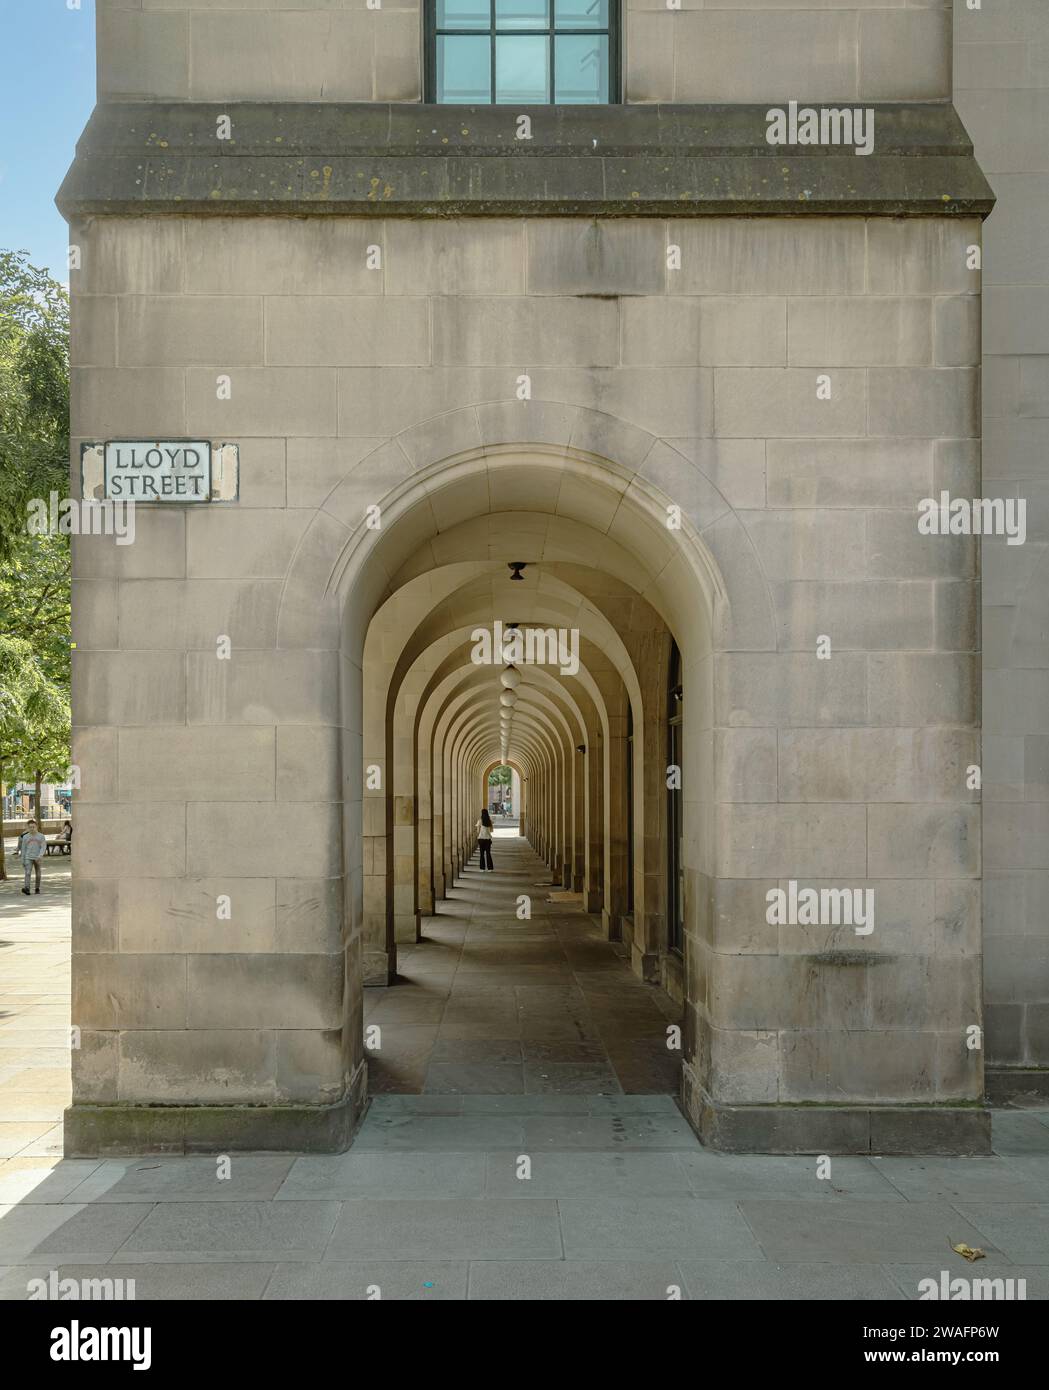 Der lange bogenförmige Durchgang am Rathaus von Manchester ist ein bemerkenswertes architektonisches Merkmal, das Funktionalität und Ästhetik miteinander verbindet. Stockfoto